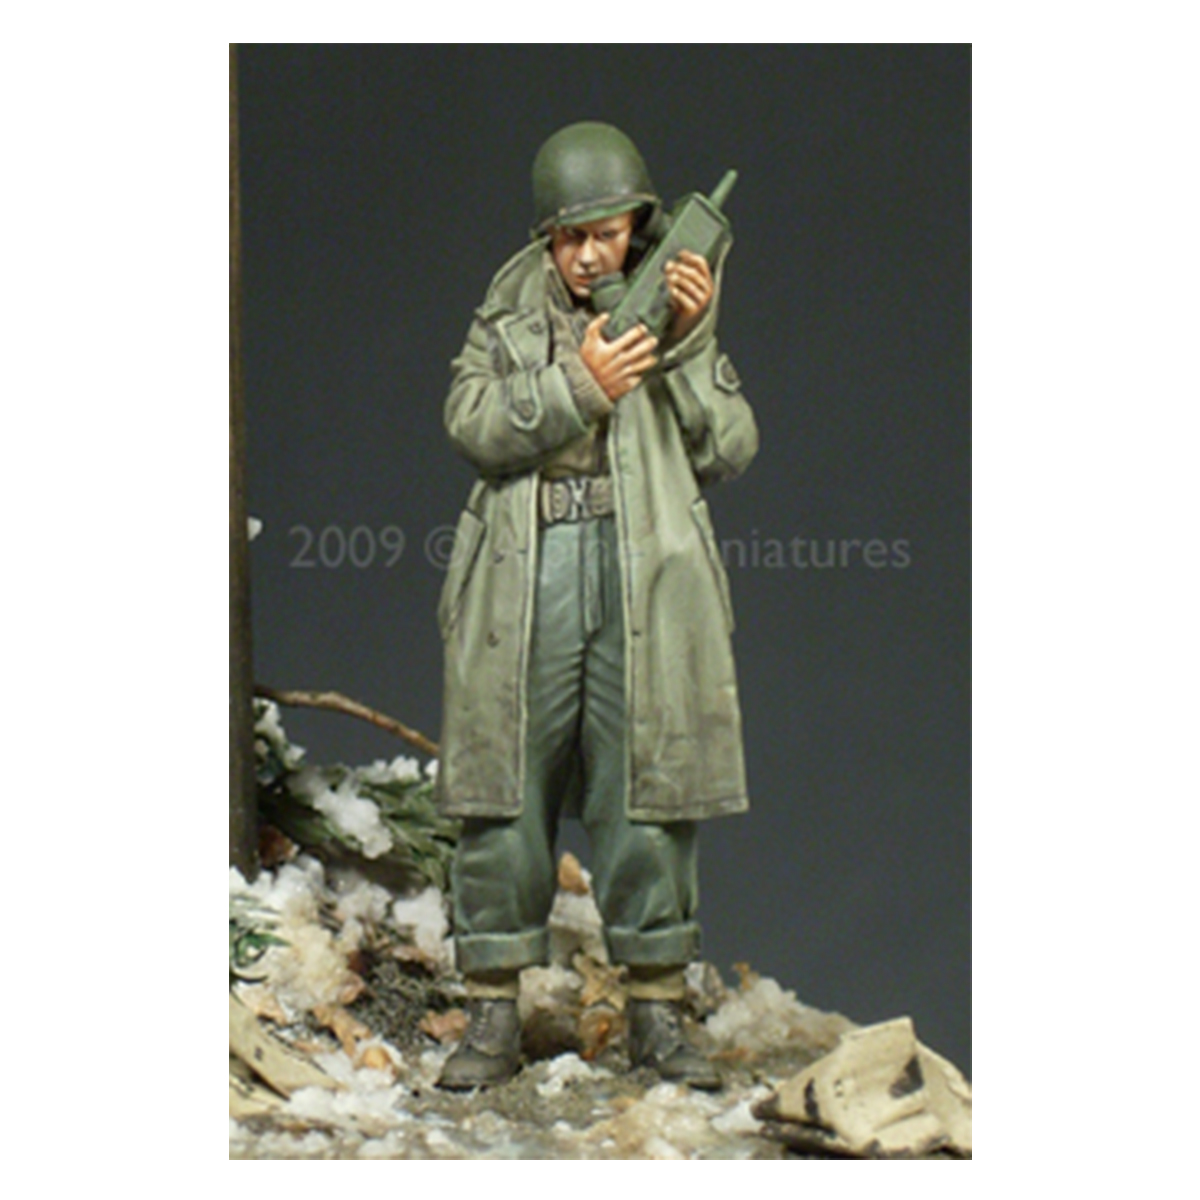 Alpine Miniatures – WW2 US Army Officer #2 1/35